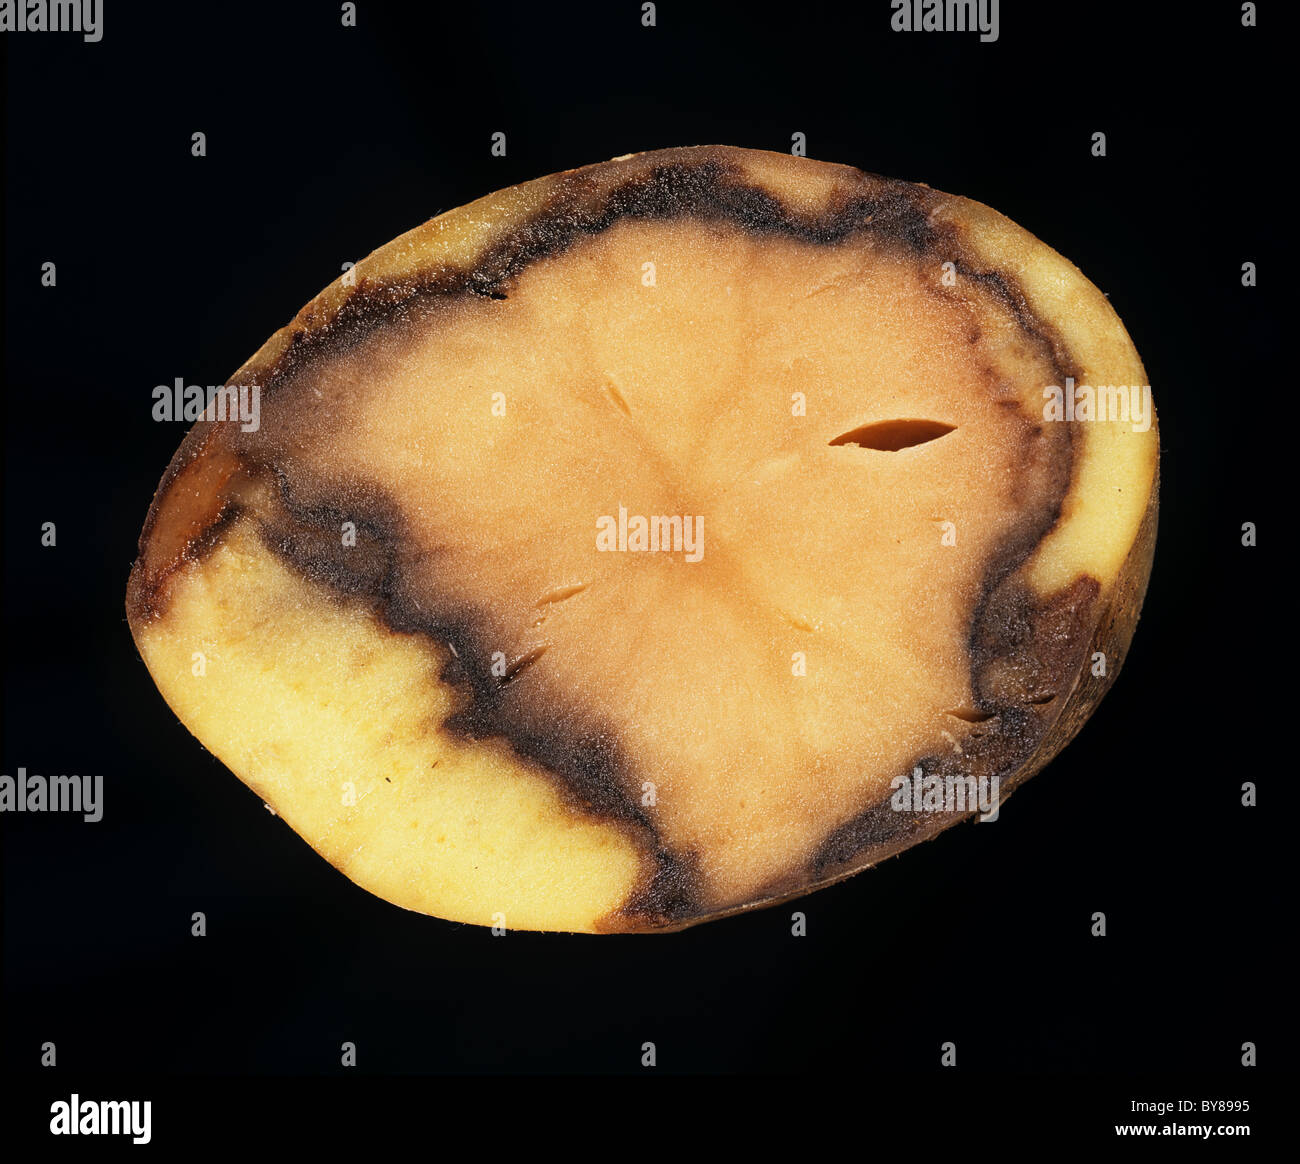 Sezione di una patata con marciume molle batterico (Pectobacterium carotovorum) Foto Stock